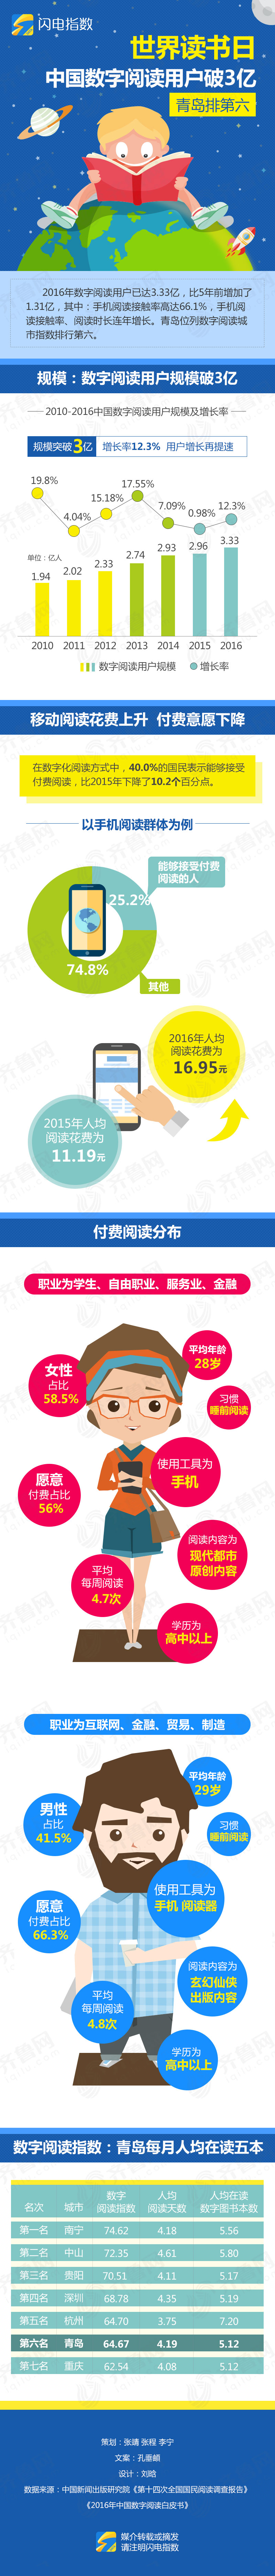 世界读书日：中国数字阅读用户破3亿 青岛排第六